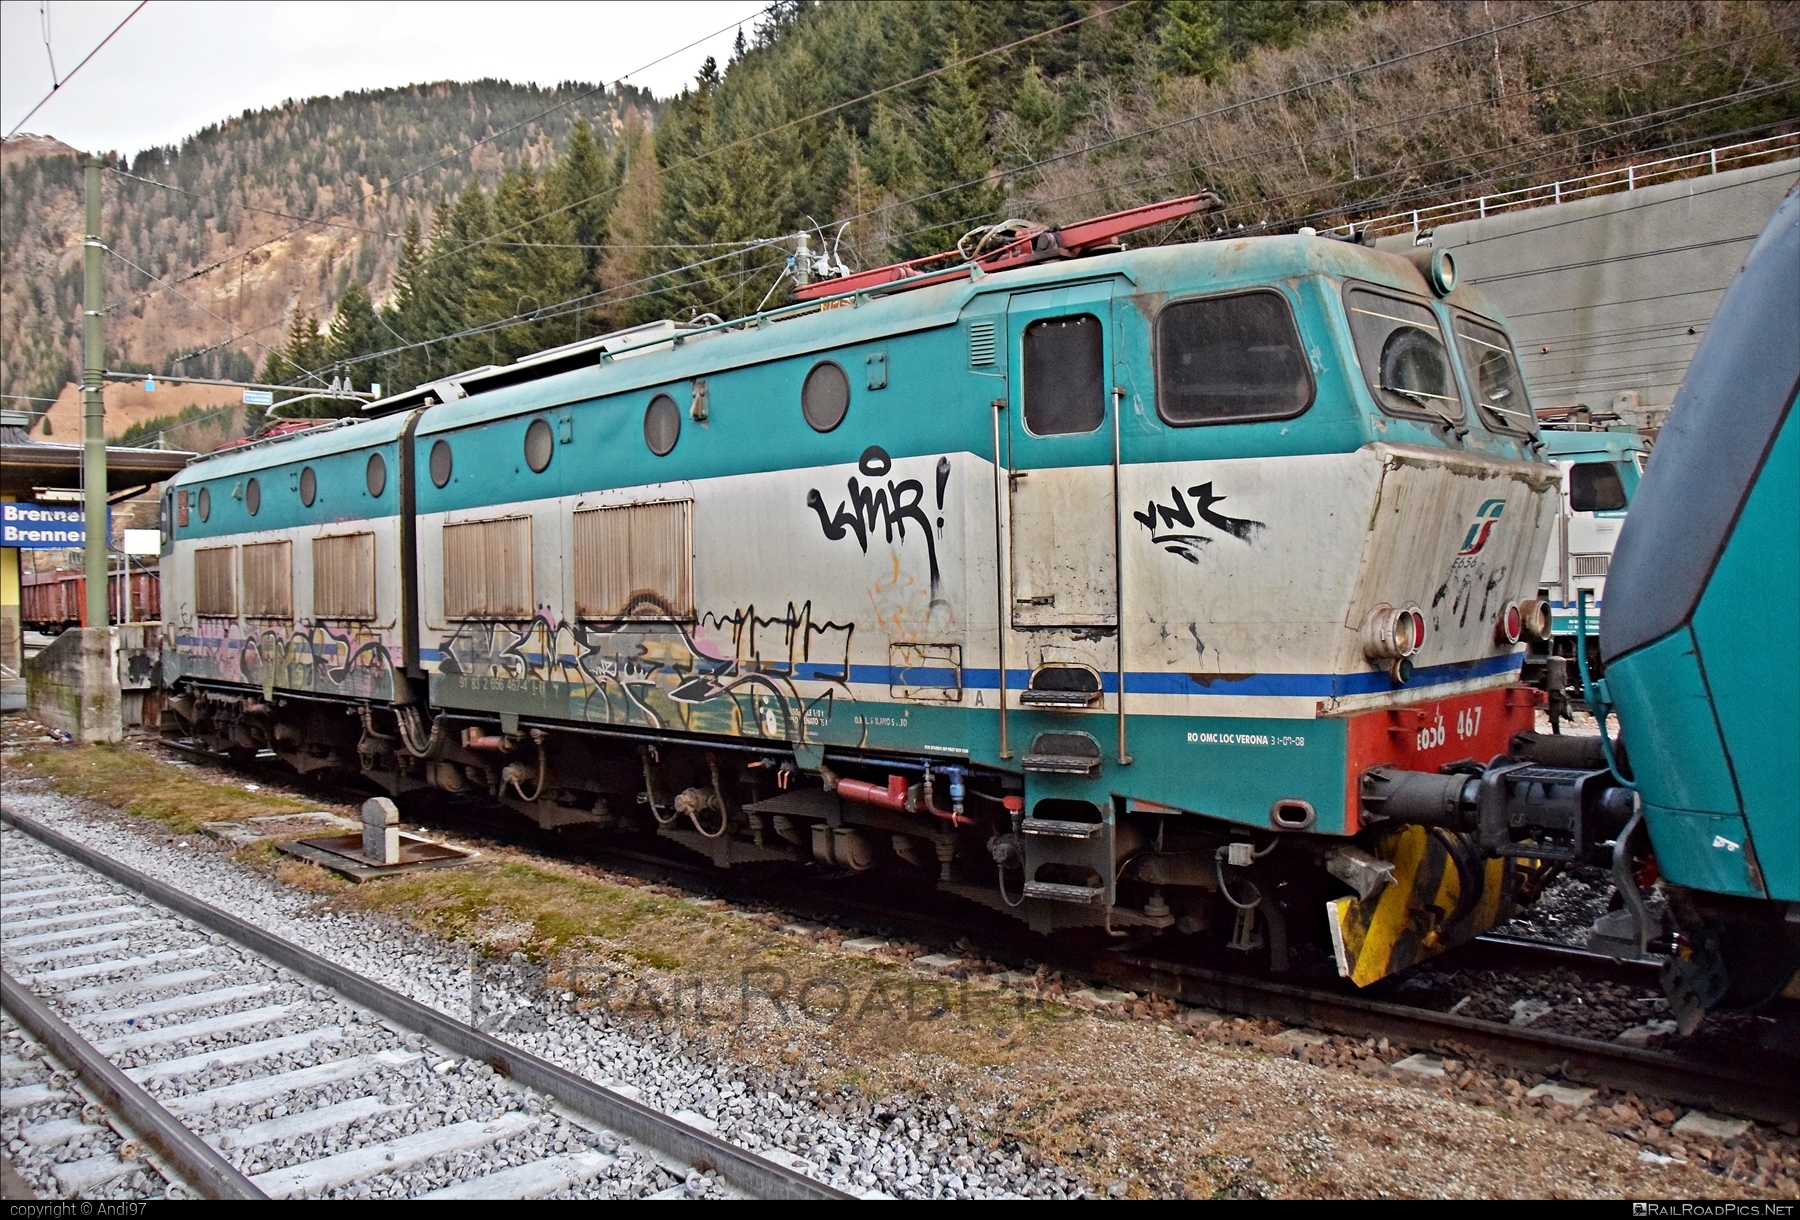 FS Class E.656 - E656 467 operated by Mercitalia Rail S.r.l. #caimano #classE656 #e656locomotive #ferroviedellostato #fs #fsClassE656 #fsitaliane #graffiti #mercitalia #trenitalia #trenitaliaspa